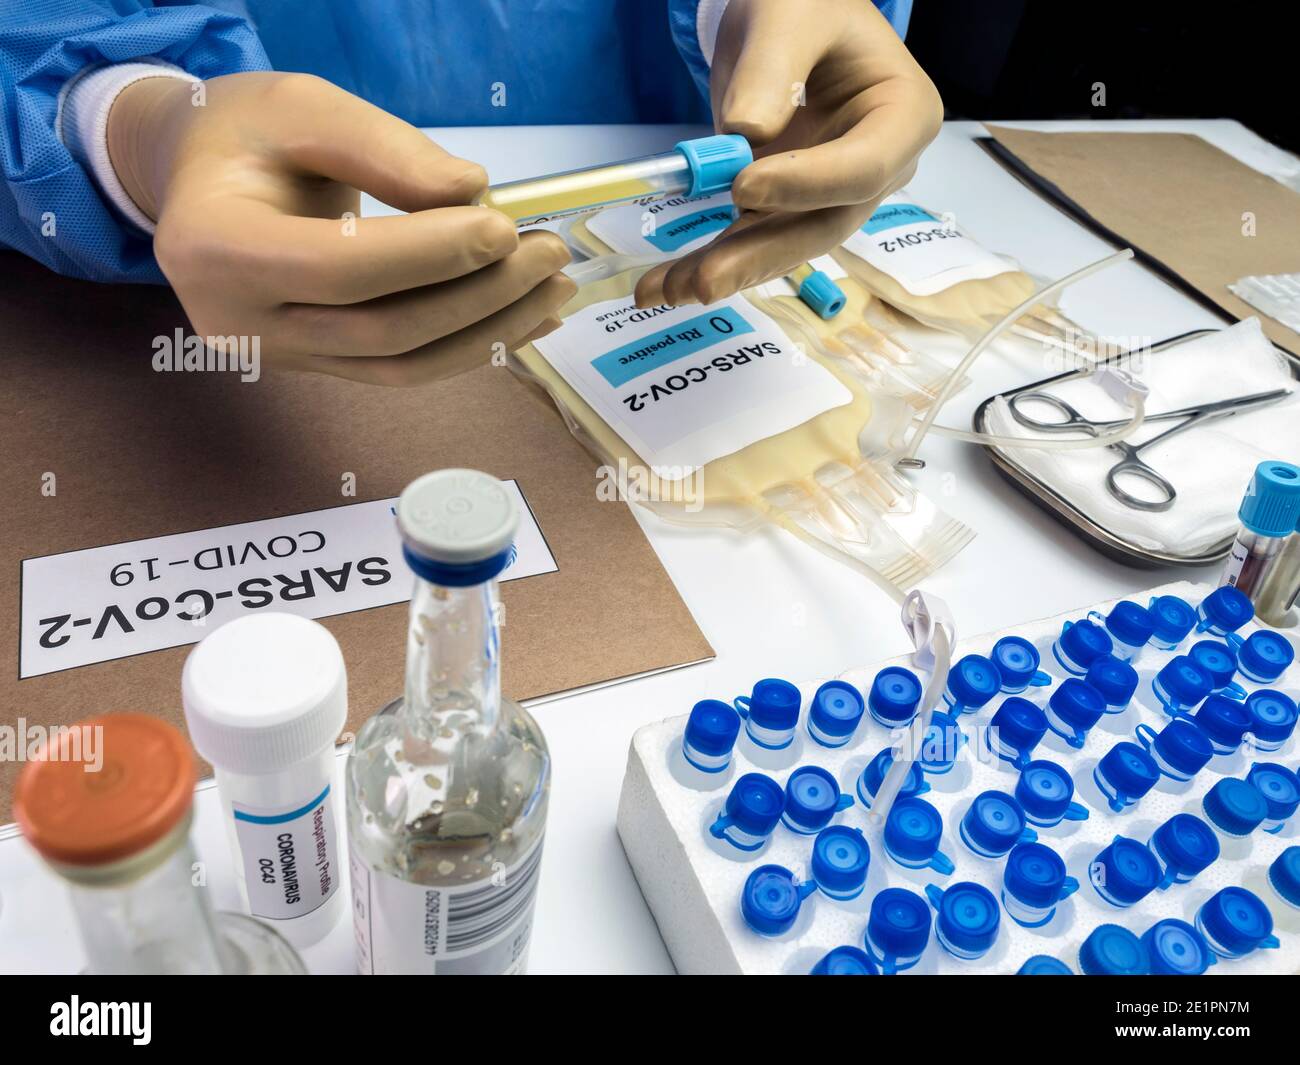 Bolsa de plasma con anticuerpos de personas curadas de SARS-COV-2 Covid-19 preparada en un hospital, imagen conceptual Foto de stock